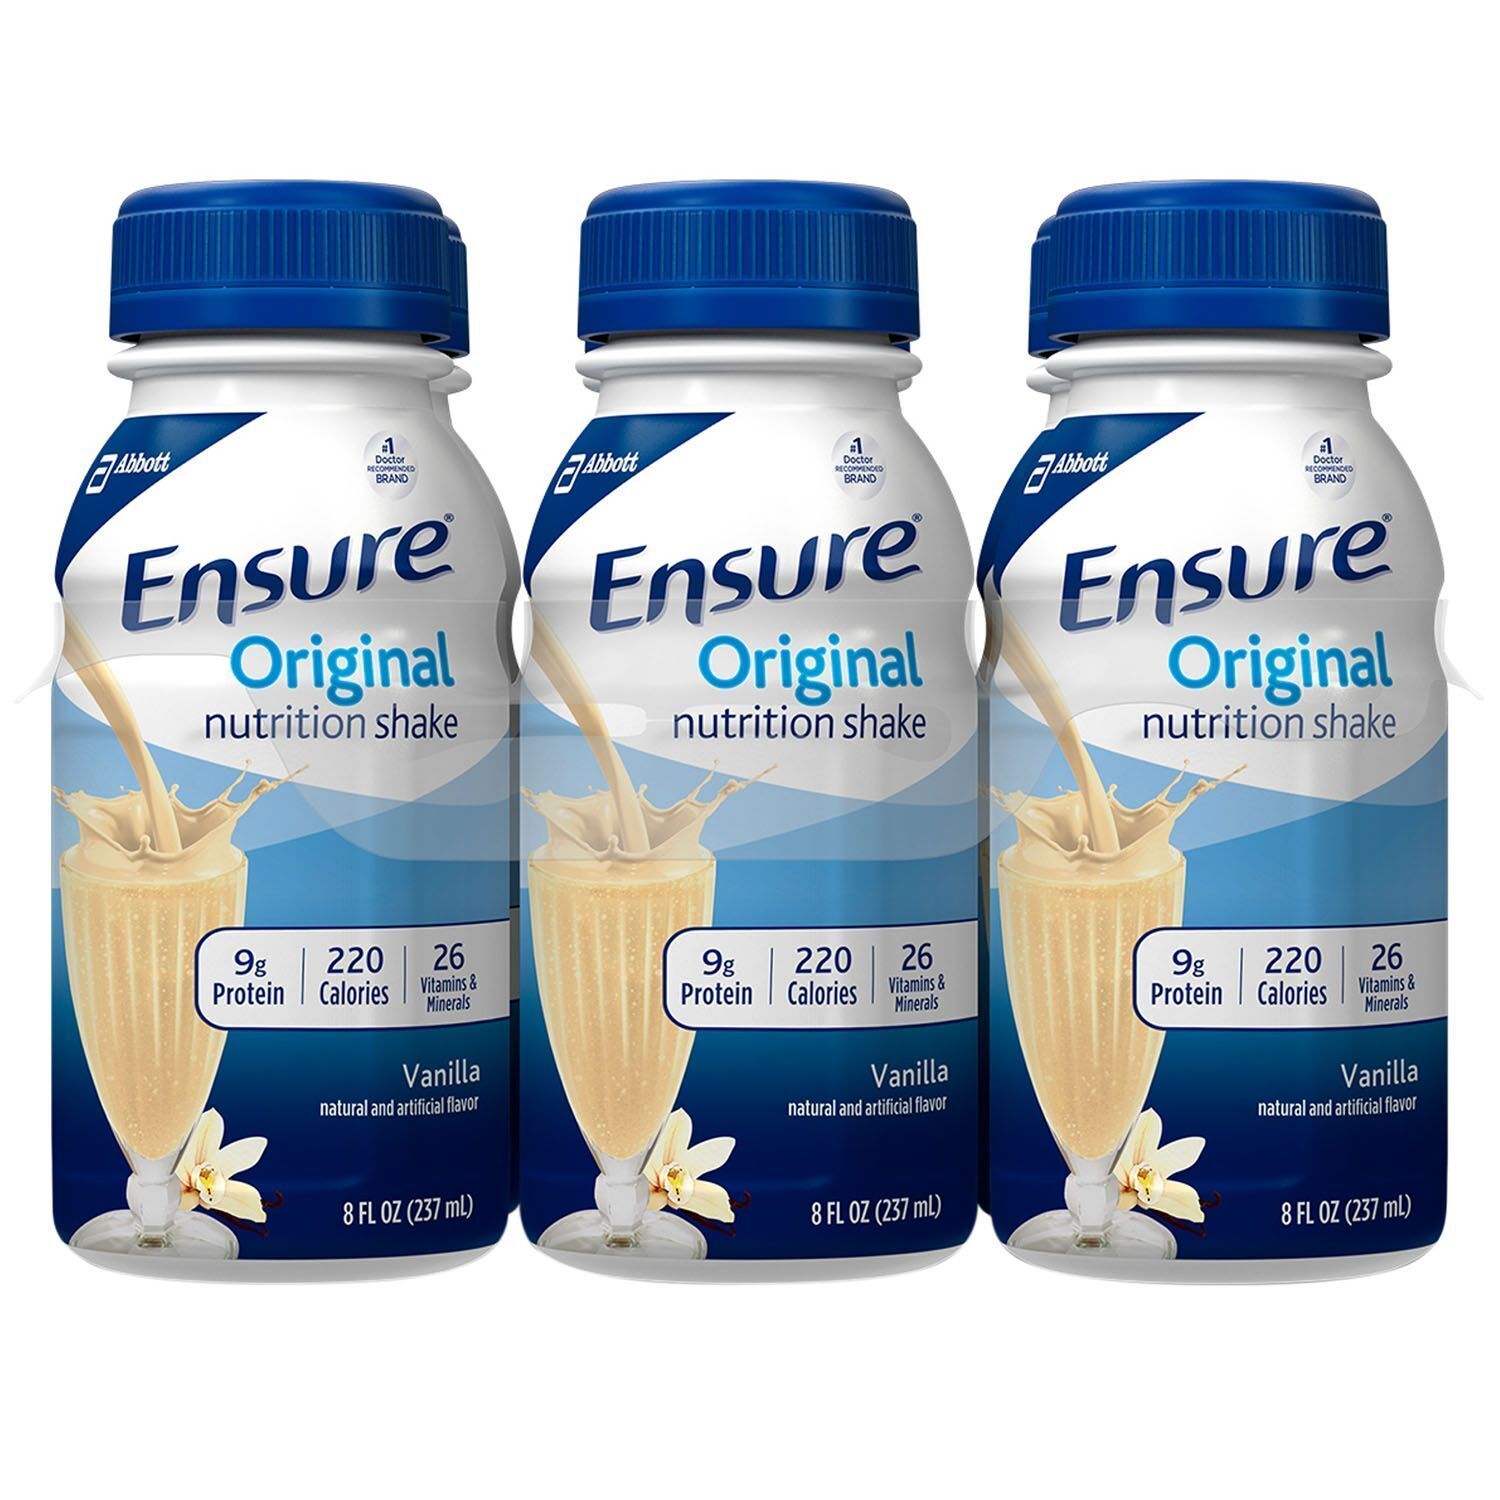 Primary image for Ensure Original Nutrition Shake, 24 pk./8 fl. oz. (choose flavor) NO SHIP TO CA